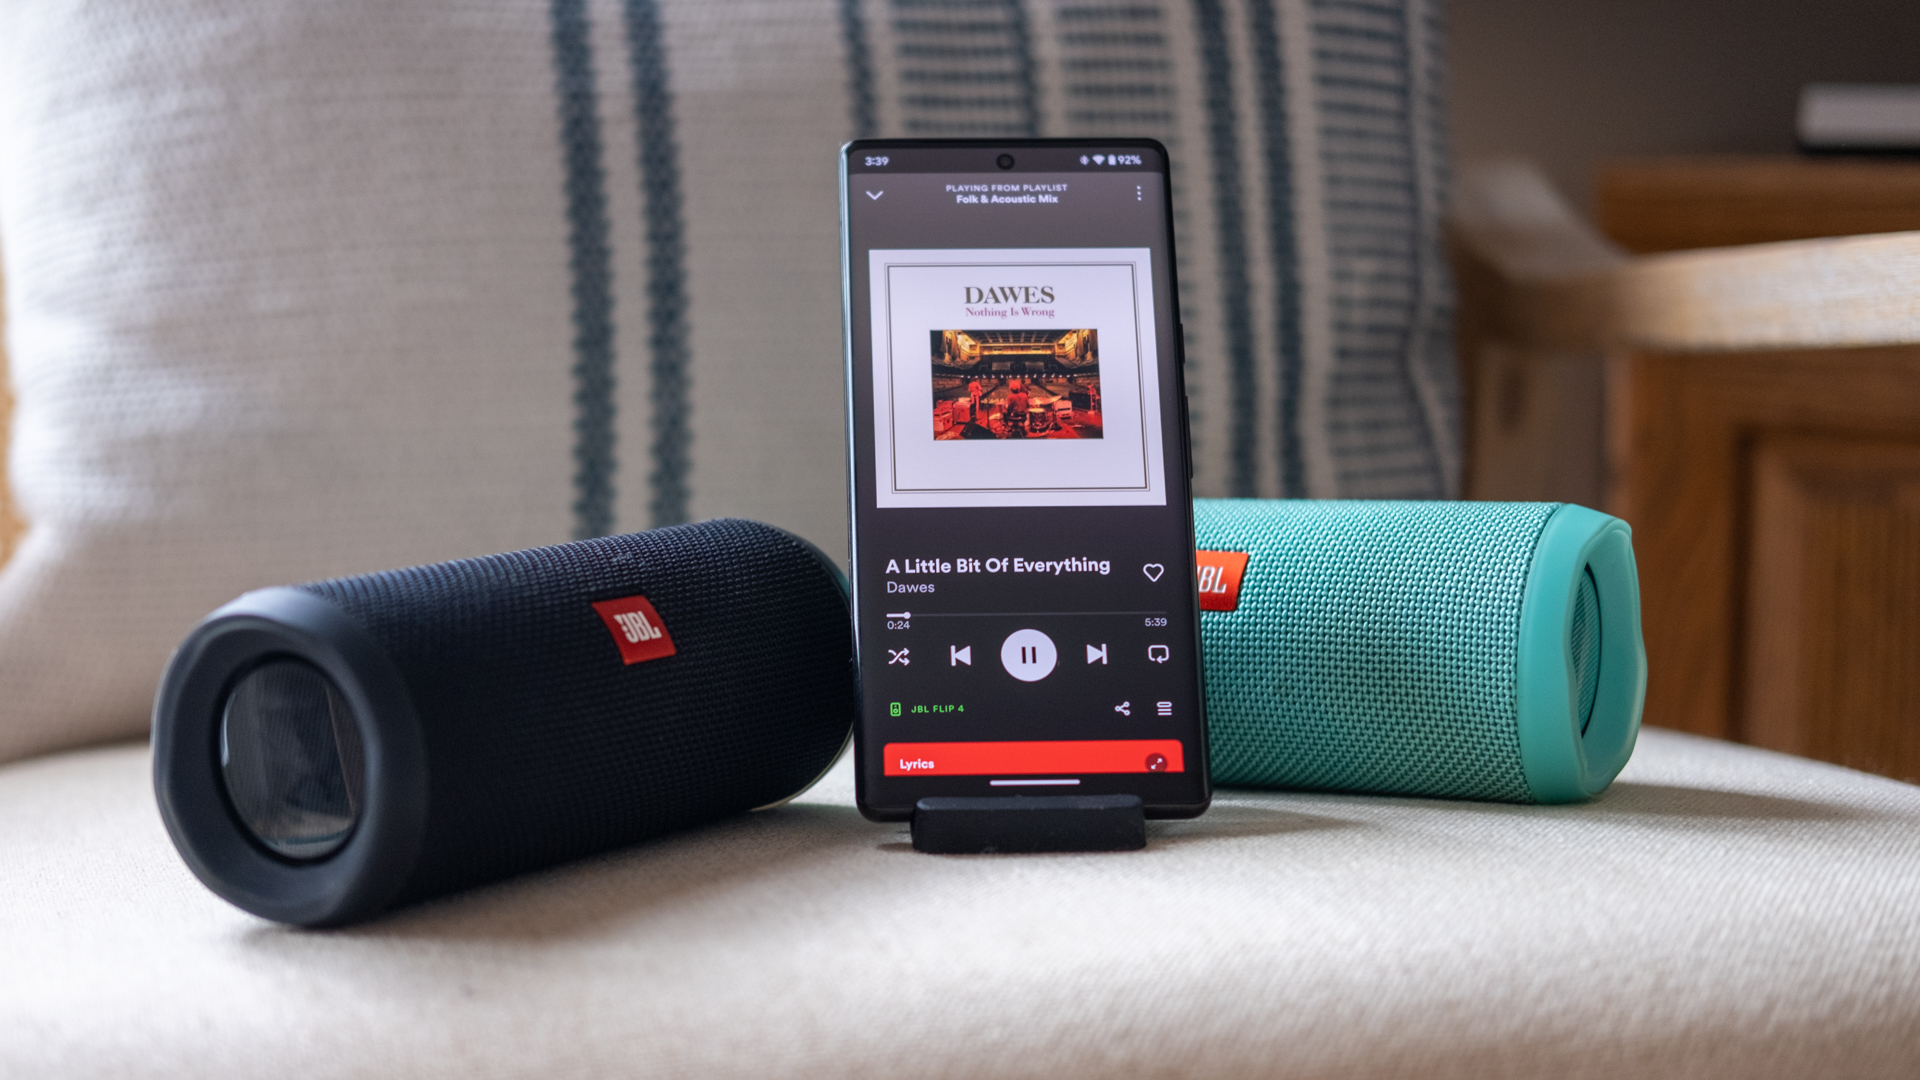 Dua speaker JBL Connect, satu biru, satu hitam, di kedua sisi ponsel memutar musik dari aplikasi Spotify.